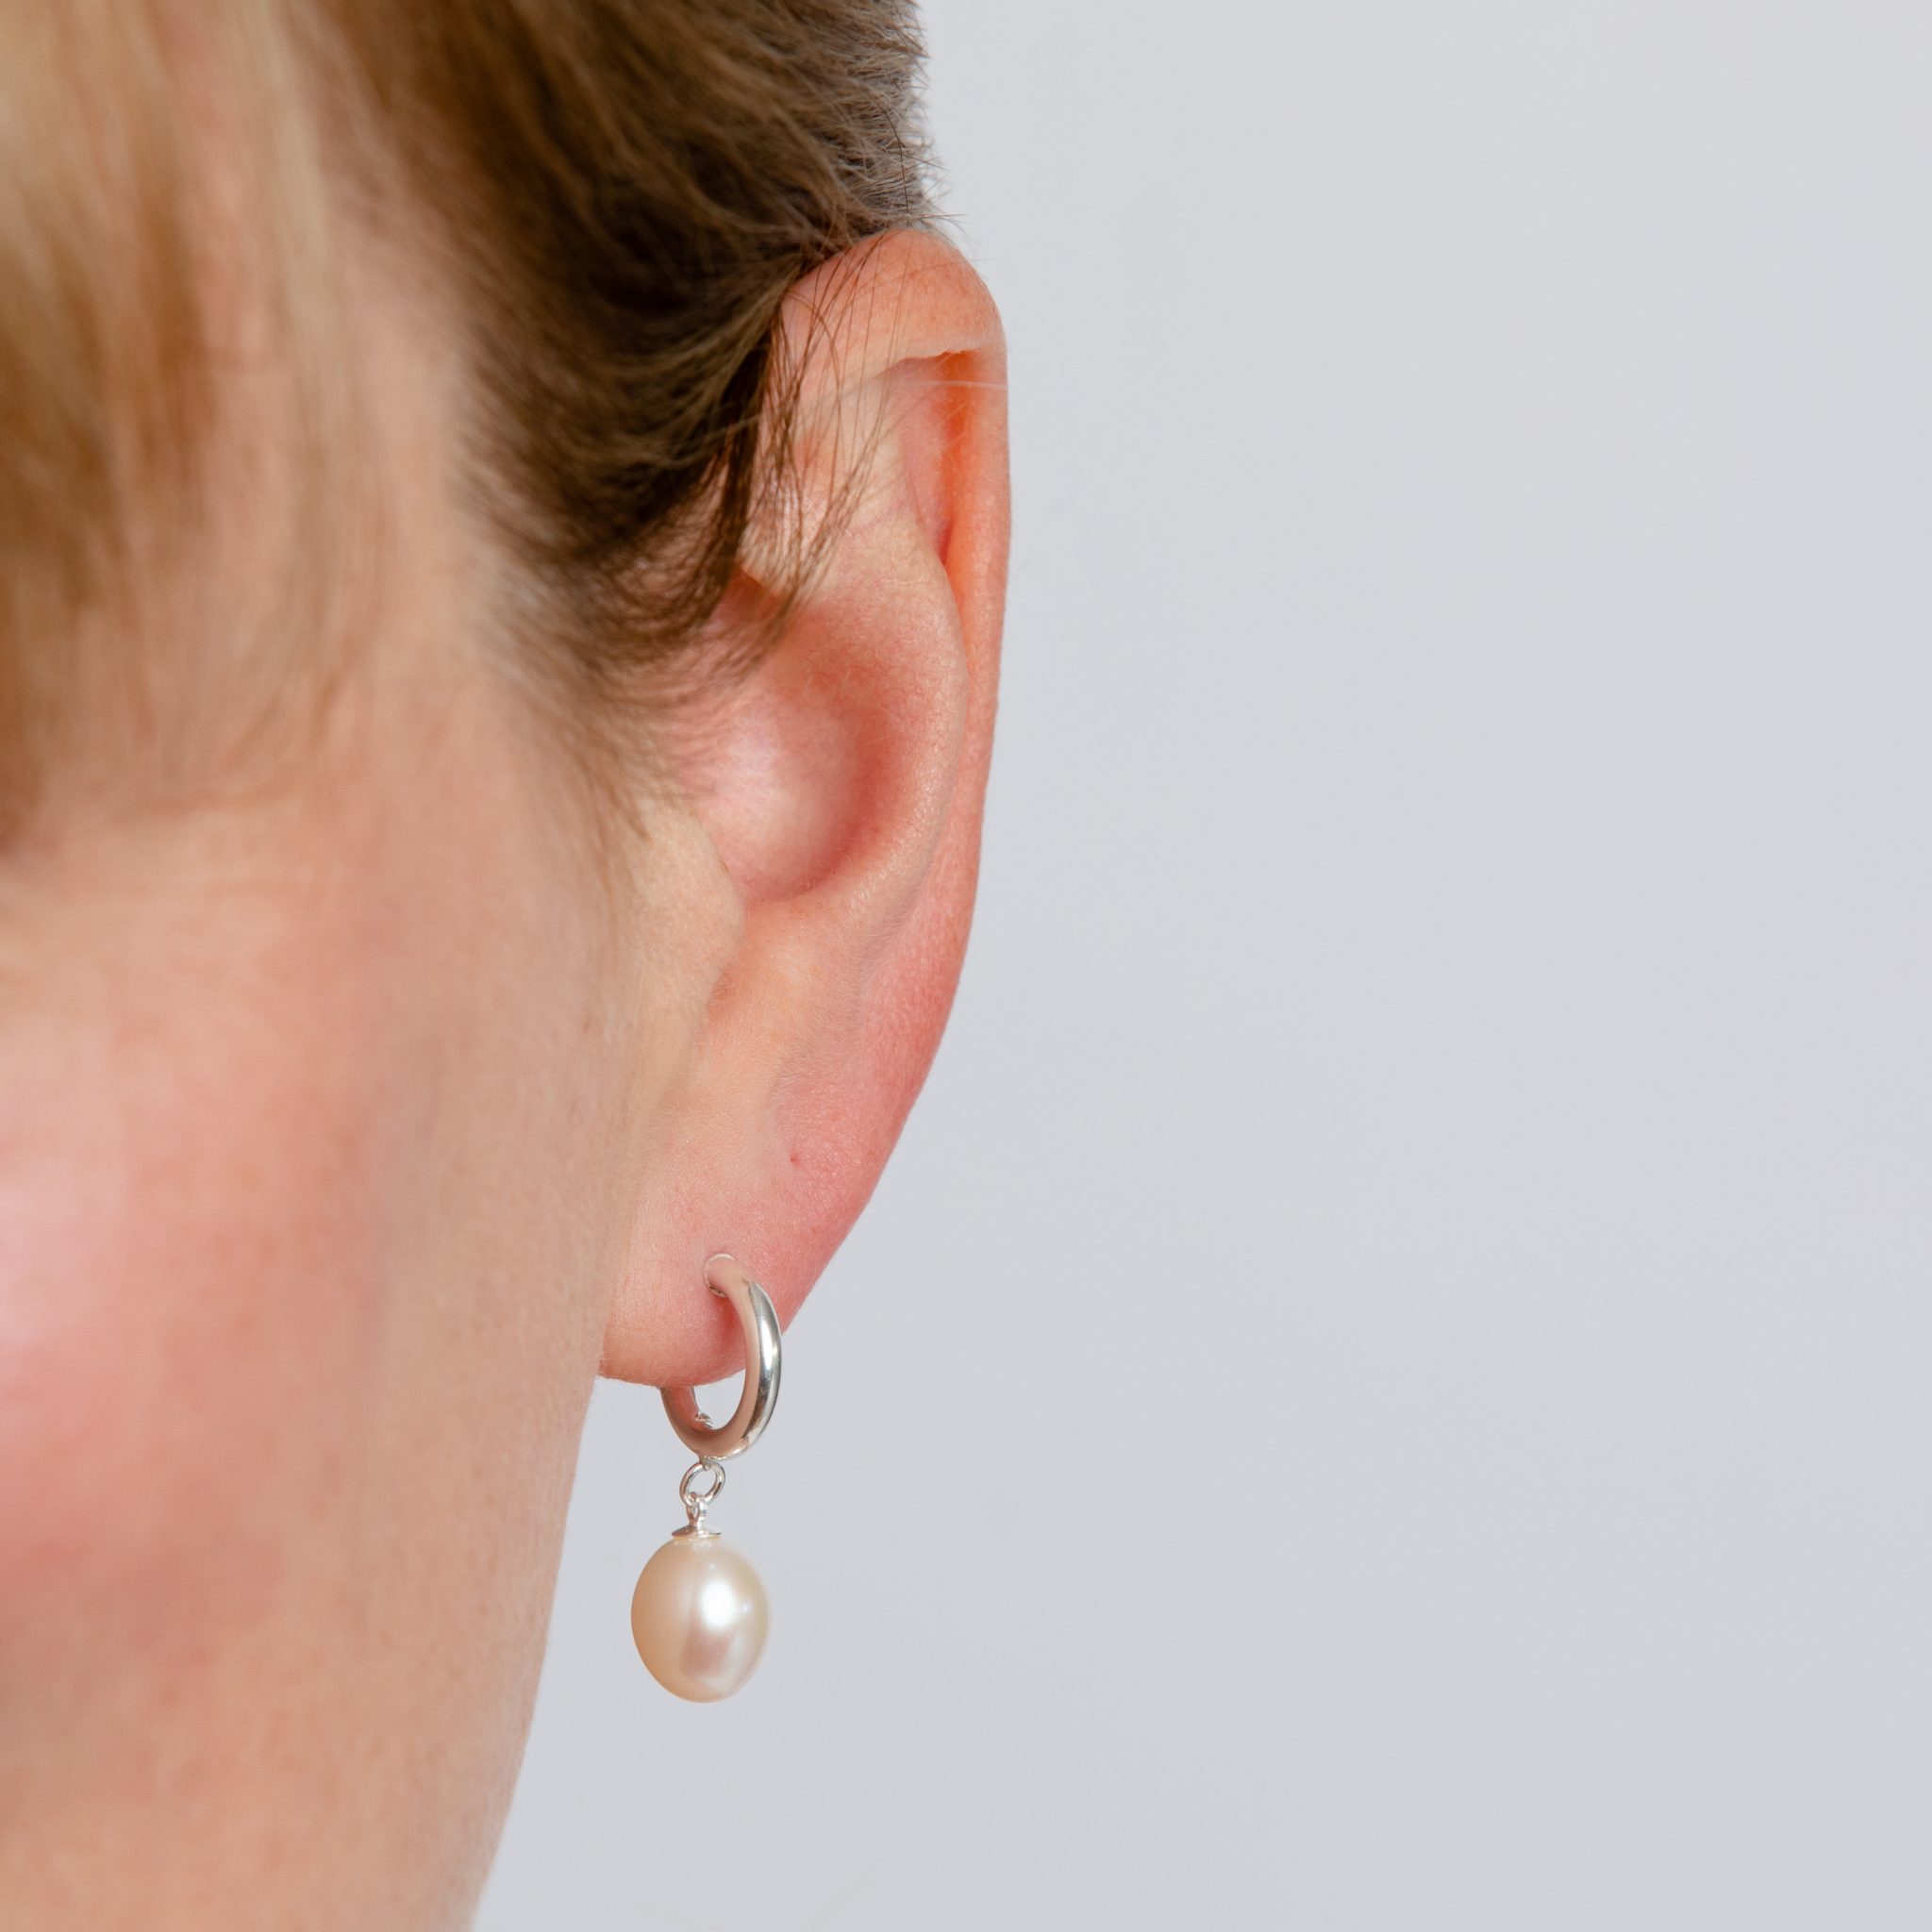 EoCot Silver Plated Oval Earrings for Womens Pearl Stud Earrings